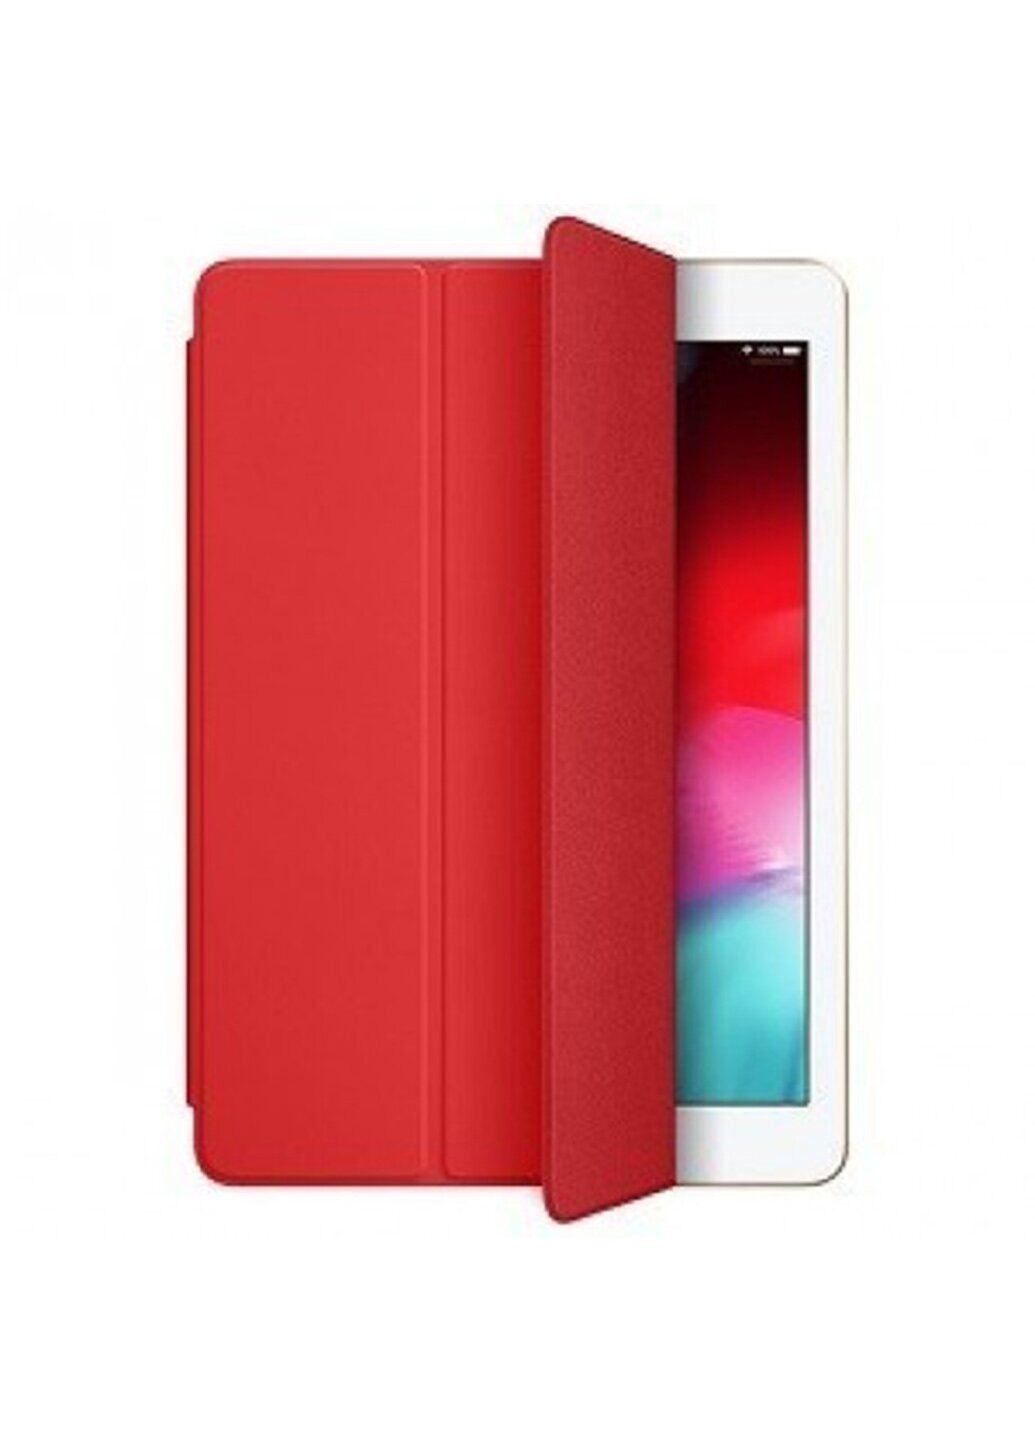 Чехол-книжка Smartcase для iPad Pro 11 (2018) красный кожаный ARM защитный Red